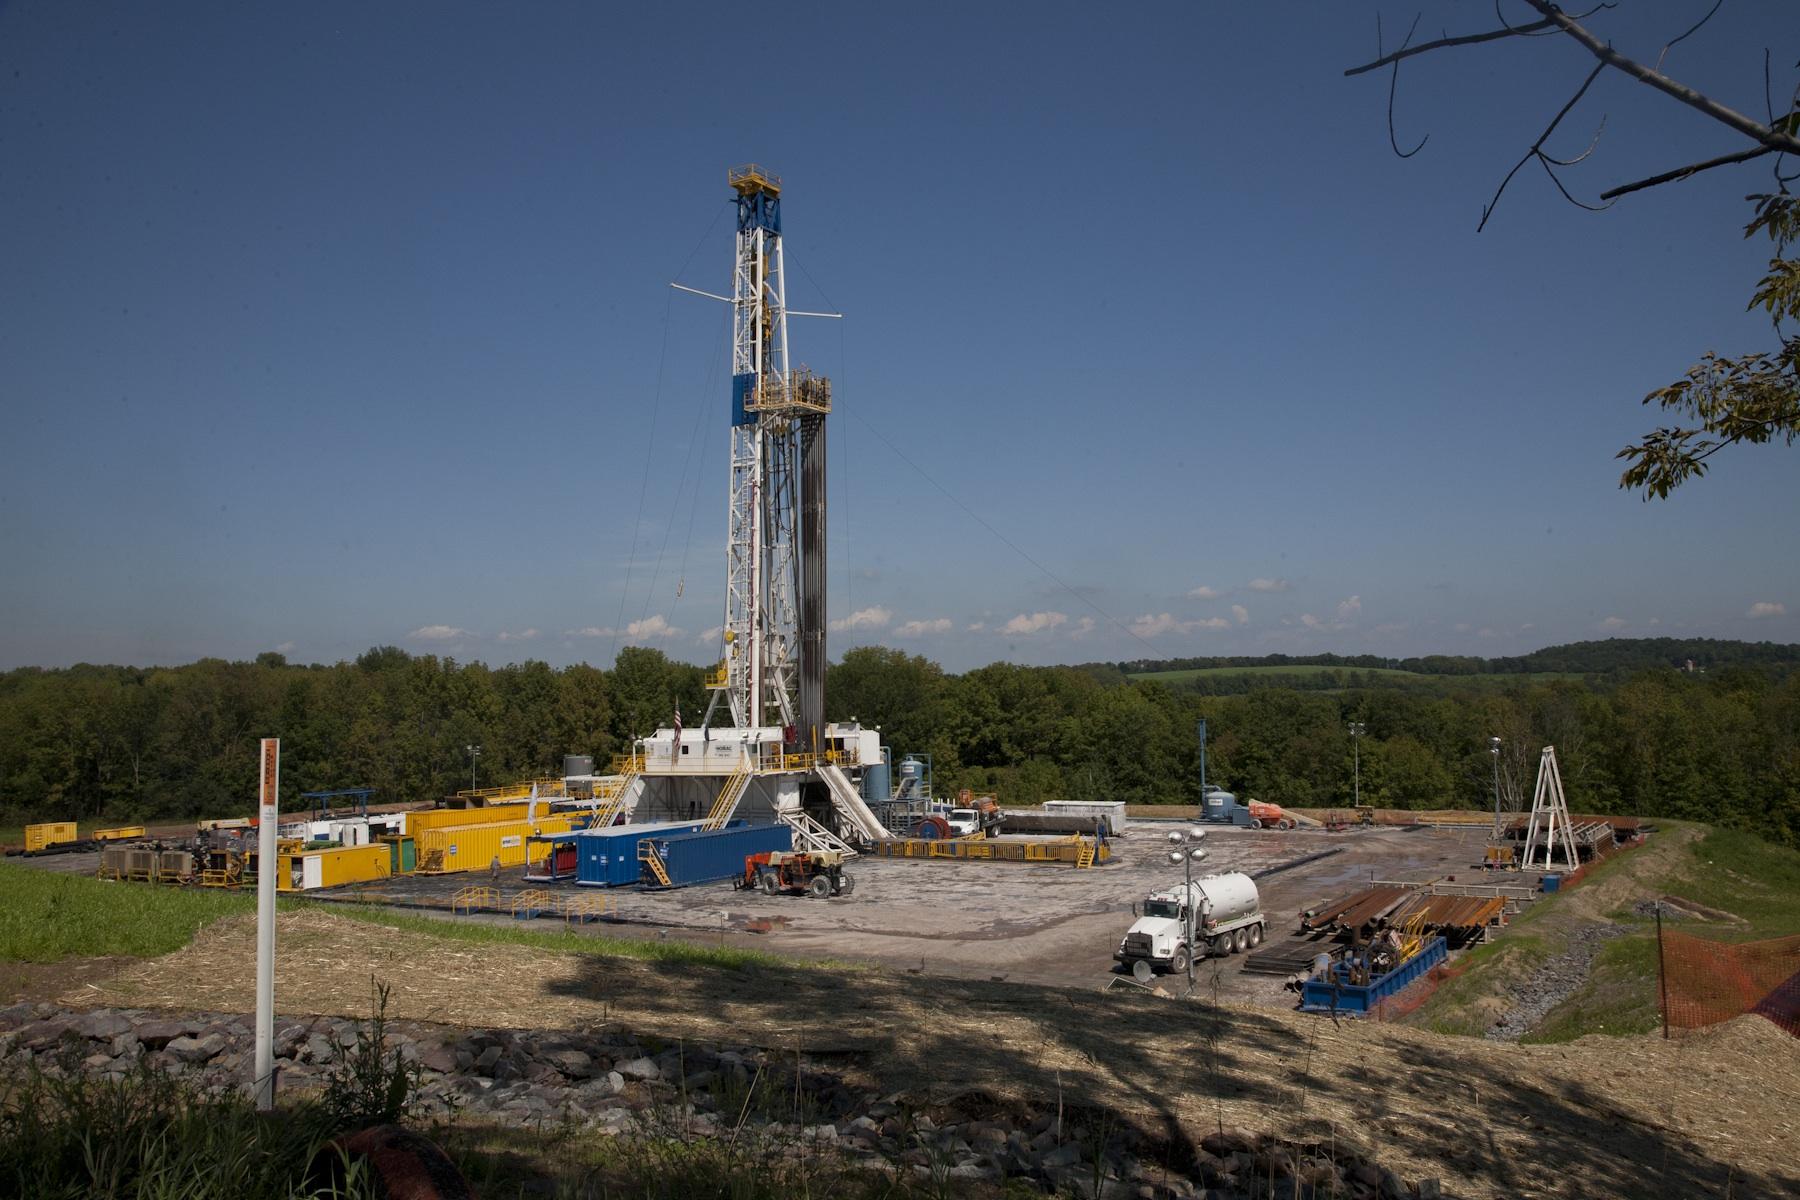 Litigation Threat Causes Boulder, Fort Collins to End Fracking Bans